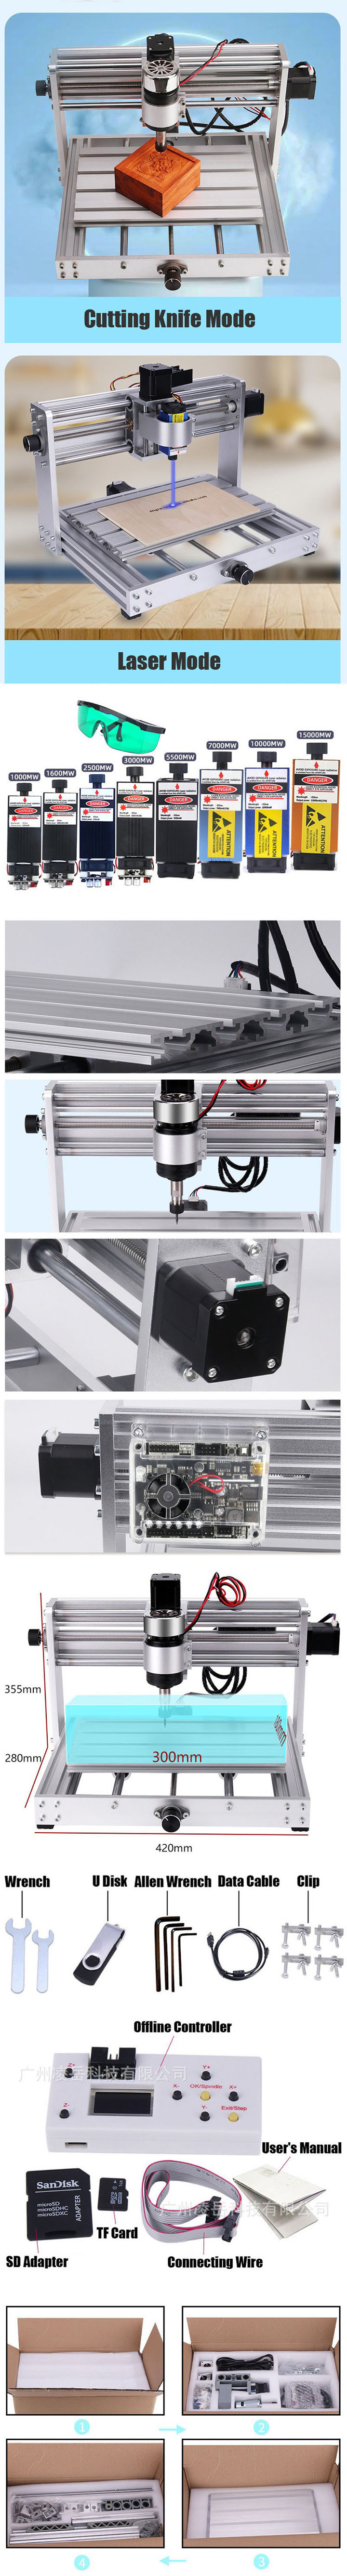 Incisore laser CNC a 3 assi